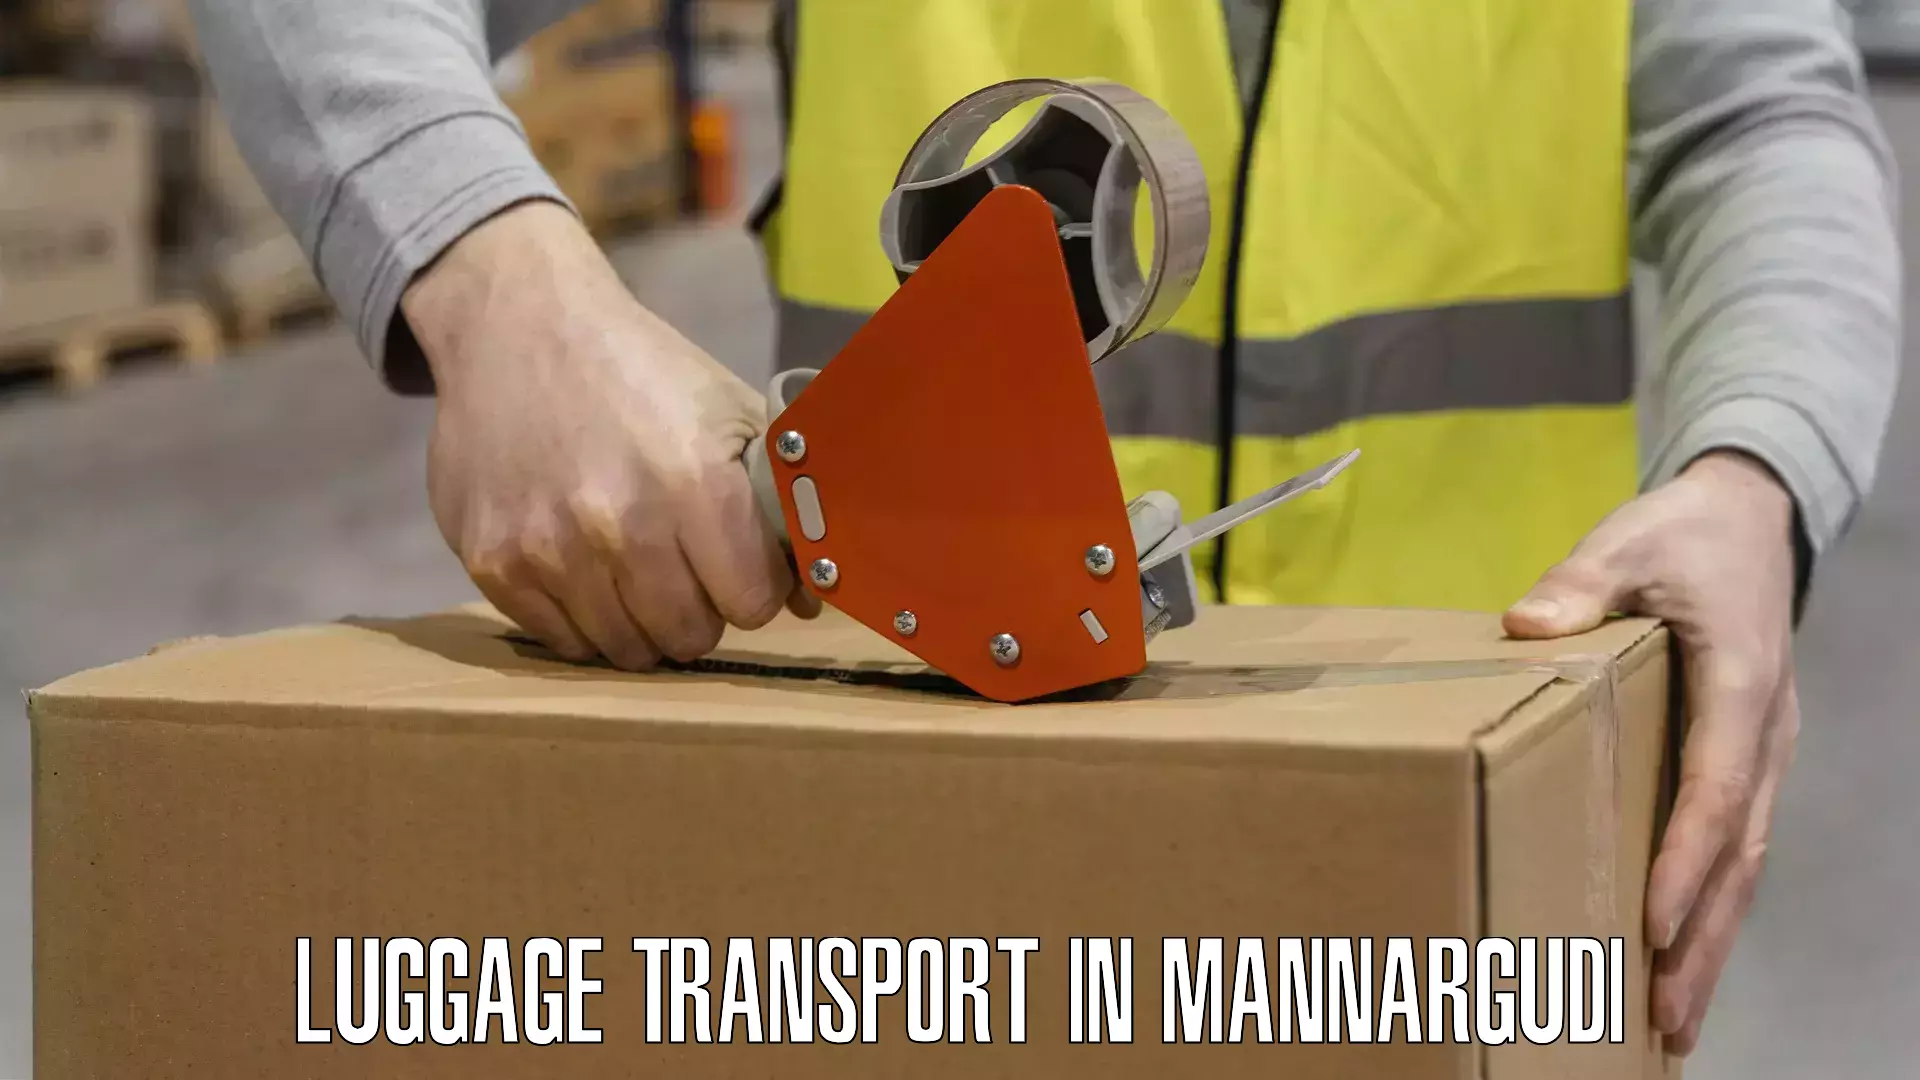 Luggage shipment tracking in Mannargudi